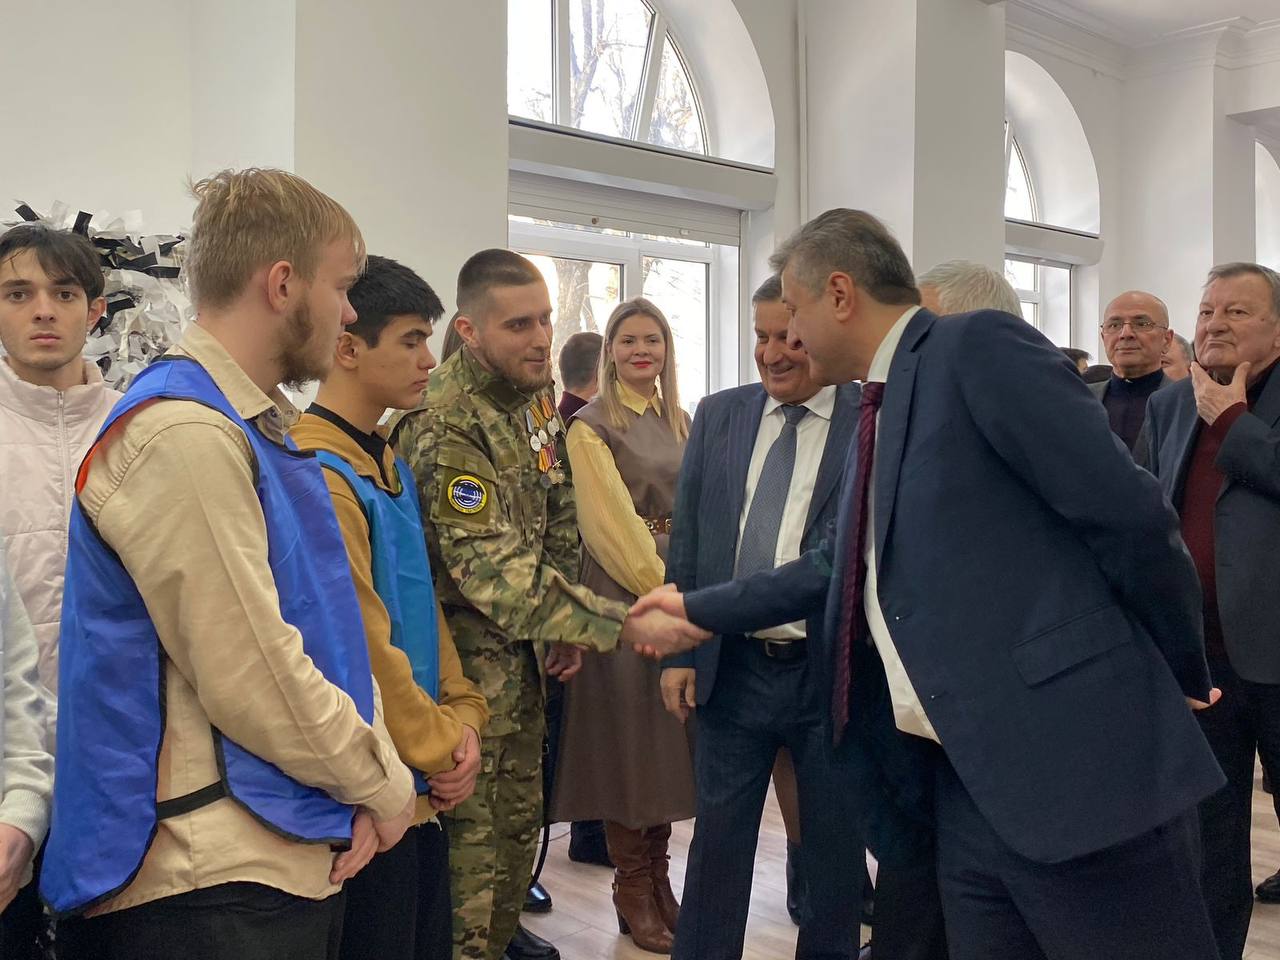 Таймураз Ахохов посетил официальную церемонию открытия Штаба общественной поддержки Кабардино-Балкарской Республики